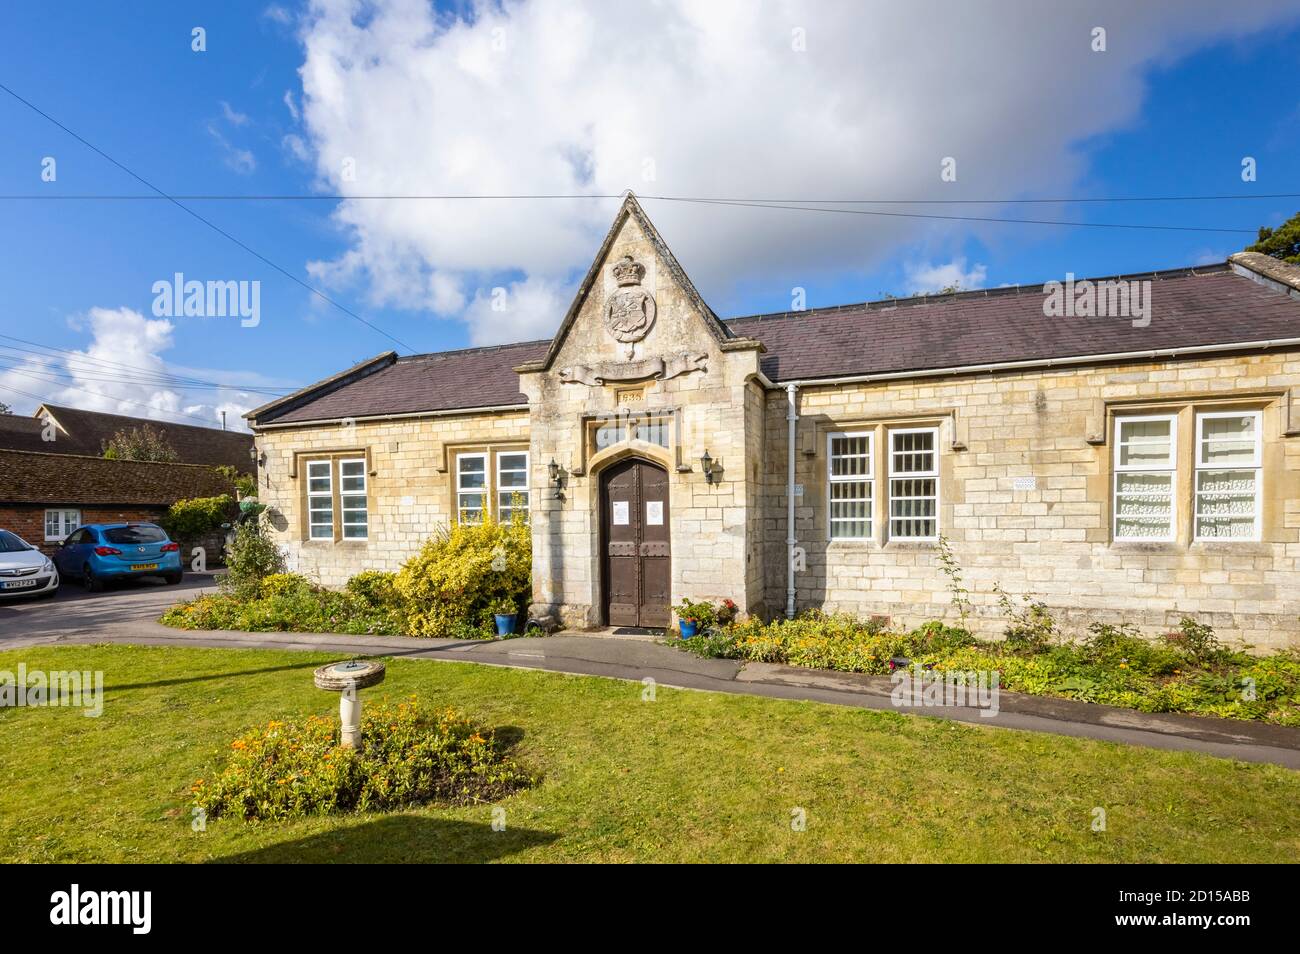 La vecchia scuola, un edificio storico datato 1835 a Great Bedwyn con la cresta di Bruce Clan e il motto Fuimus, un villaggio nel Wiltshire orientale, Inghilterra meridionale Foto Stock